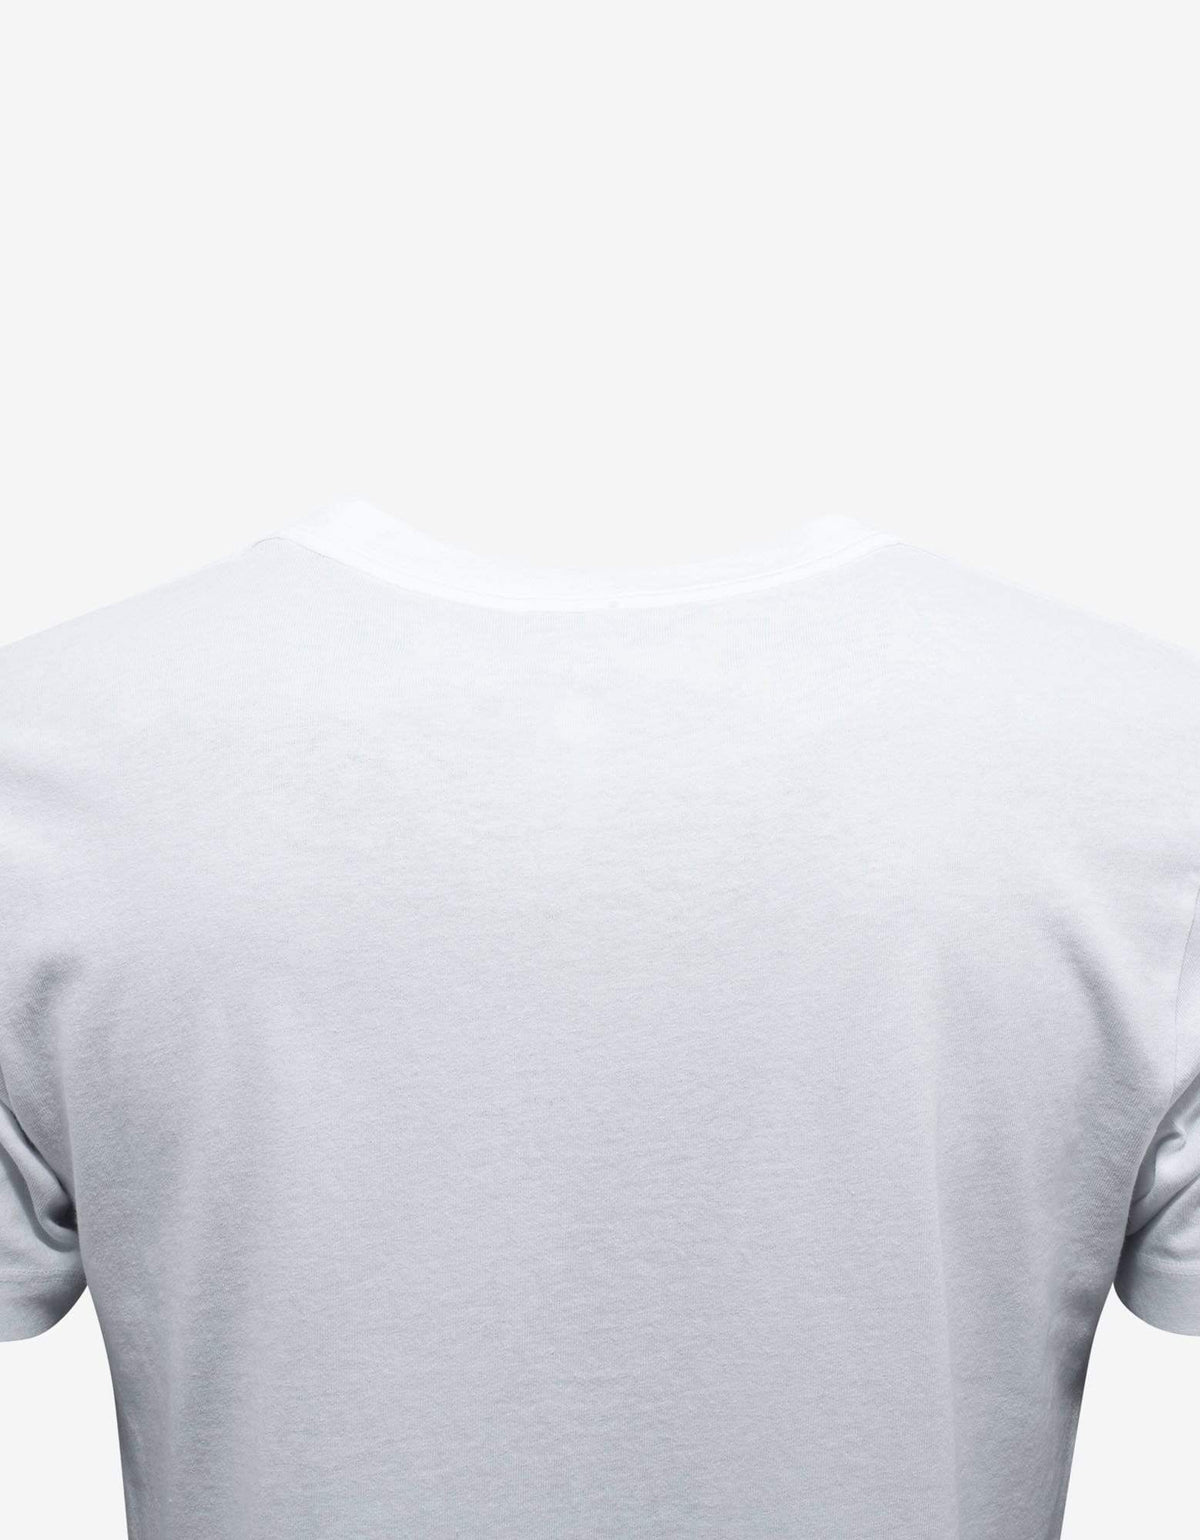 Off-White White Off-White Logo Print T-Shirt